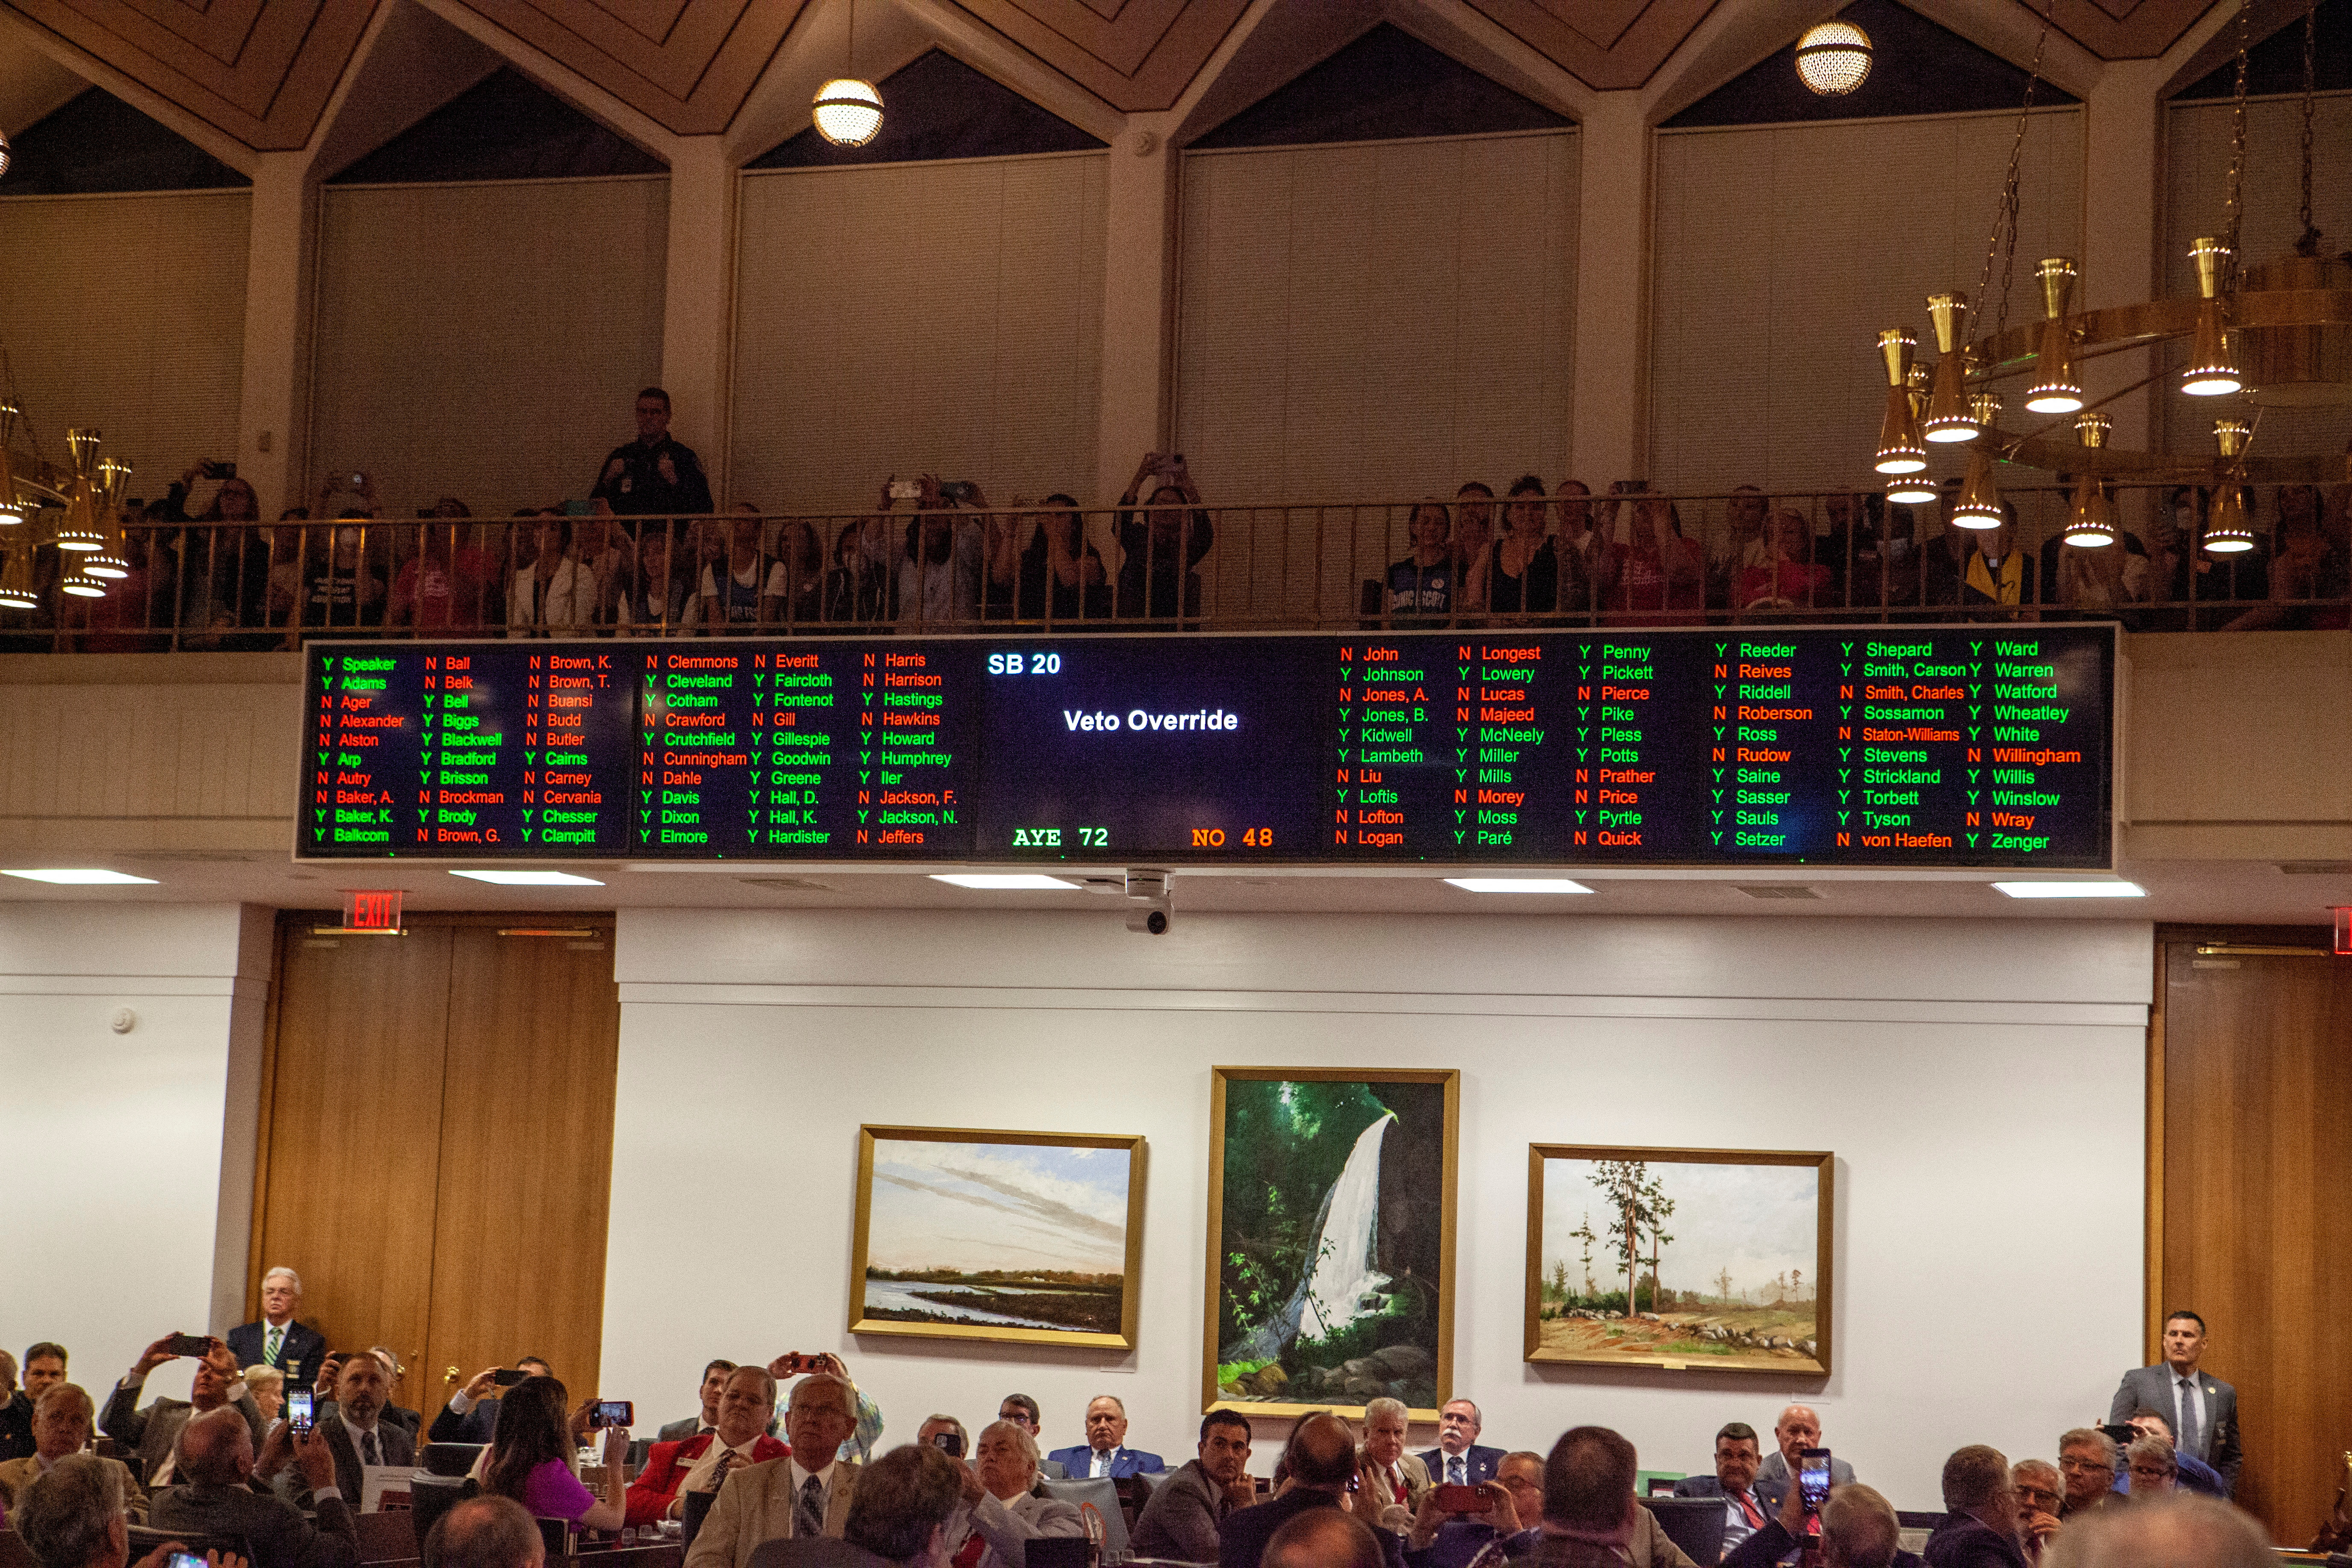 North Carolina Republican lawmakers hold a vote to override Democratic governor's veto of abortion bill